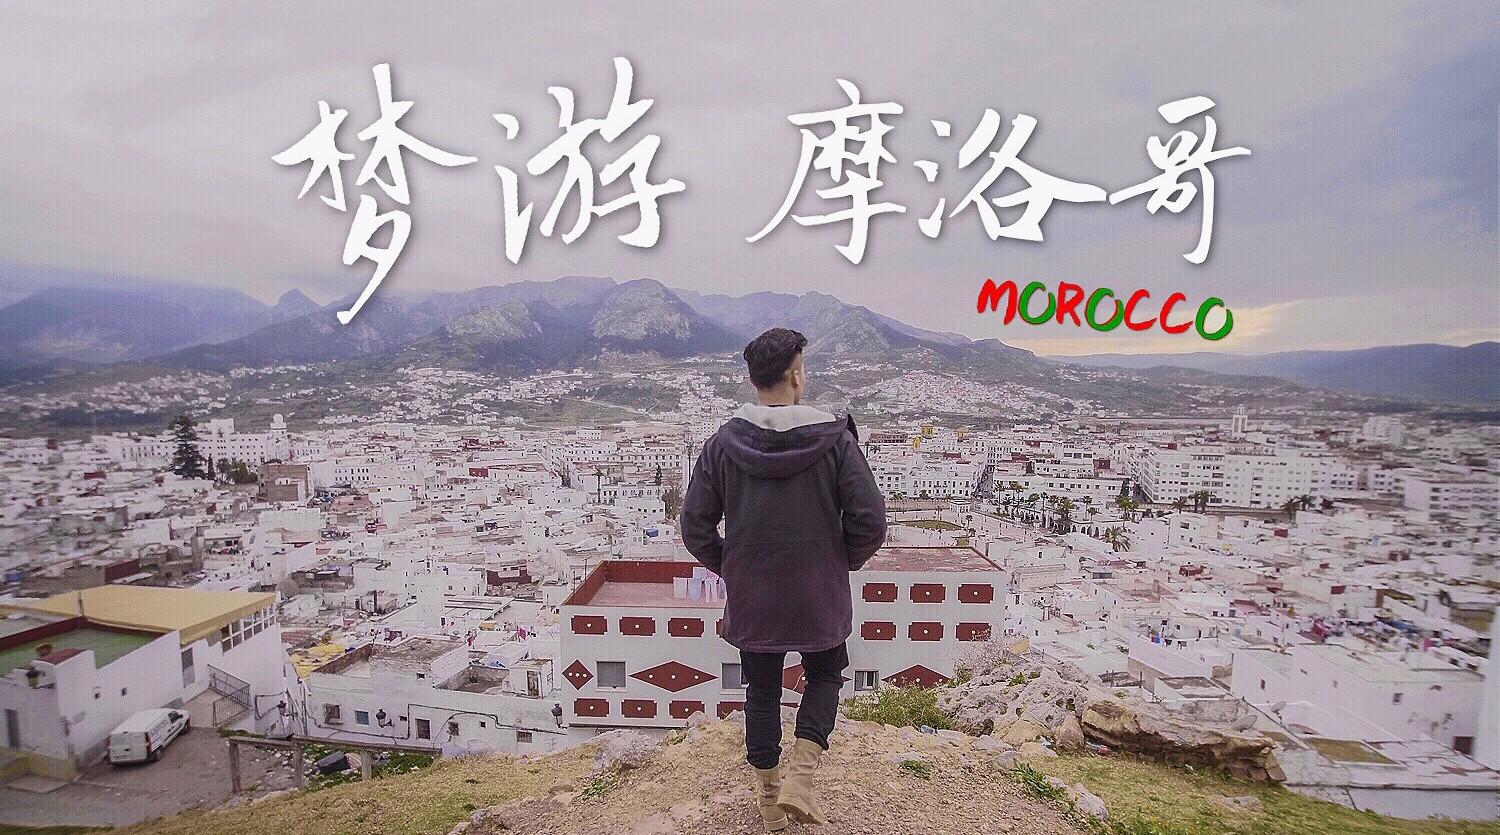 《梦游摩洛哥 Dreaming Morocco》旅行微电影